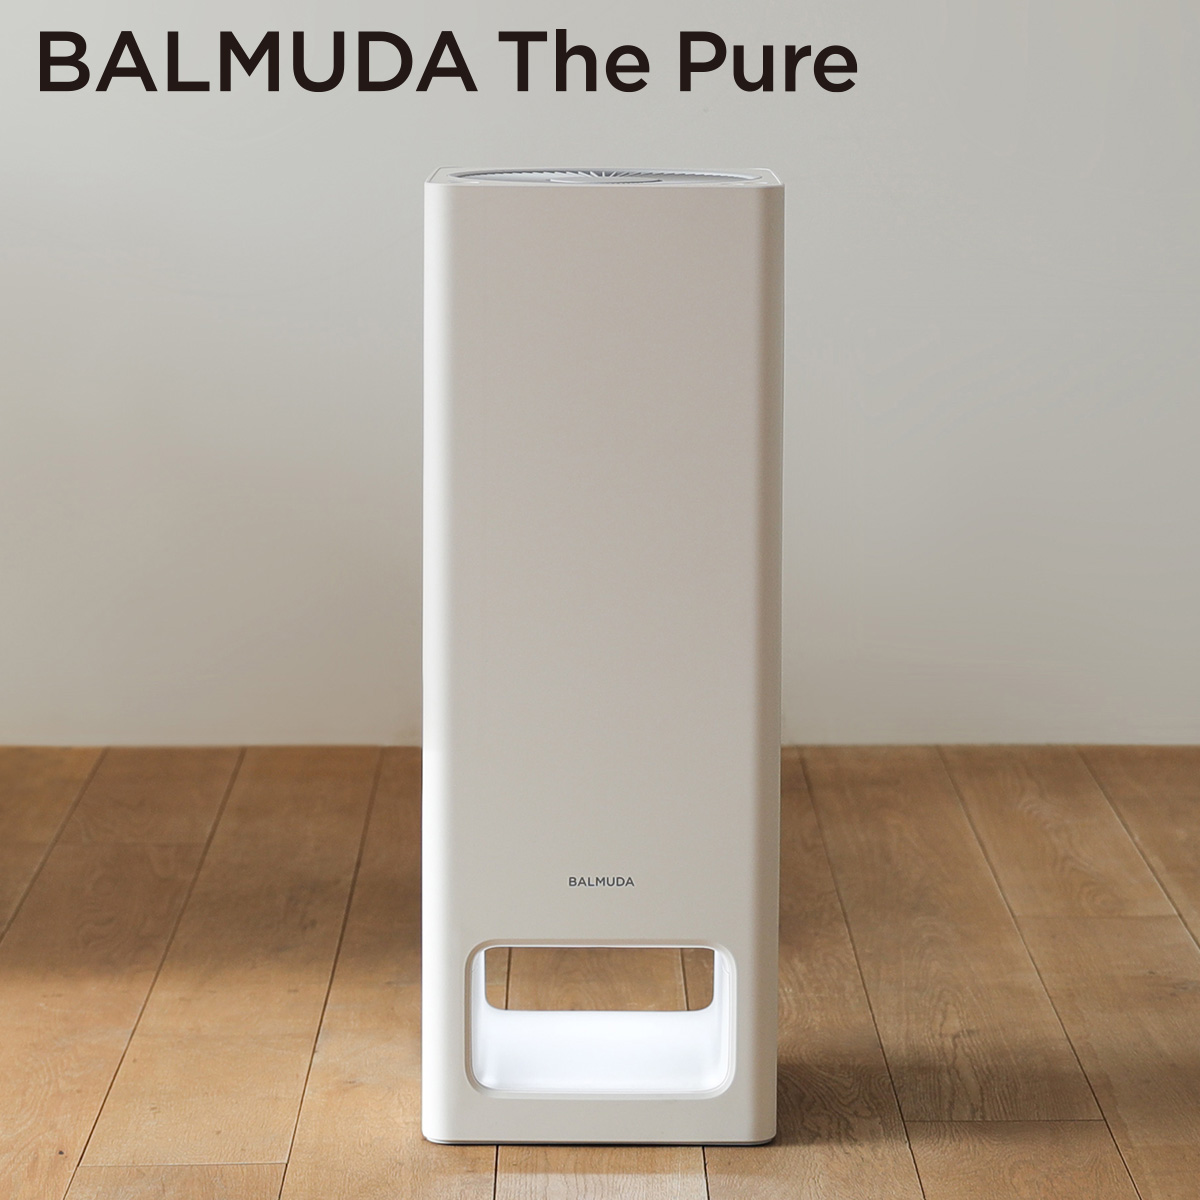 バルミューダ 「BALMUDA The Pure」 ザ・ピュア 空気清浄機 ホワイト A01A-WH